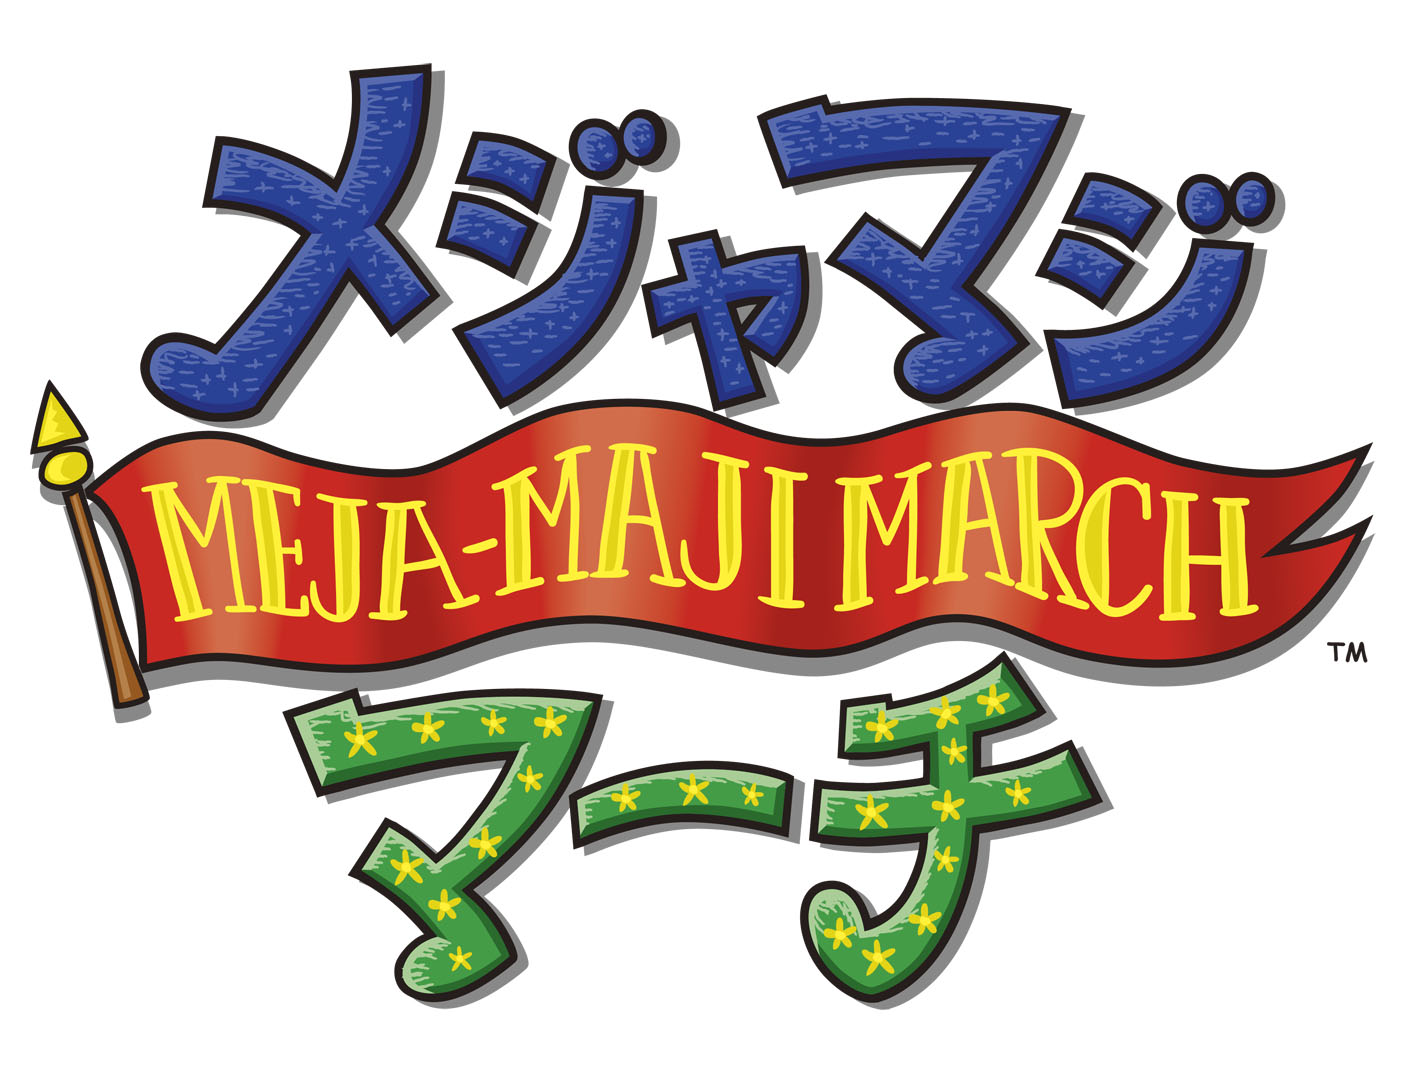 MEJA-MAJIMARCH_logo.jpg